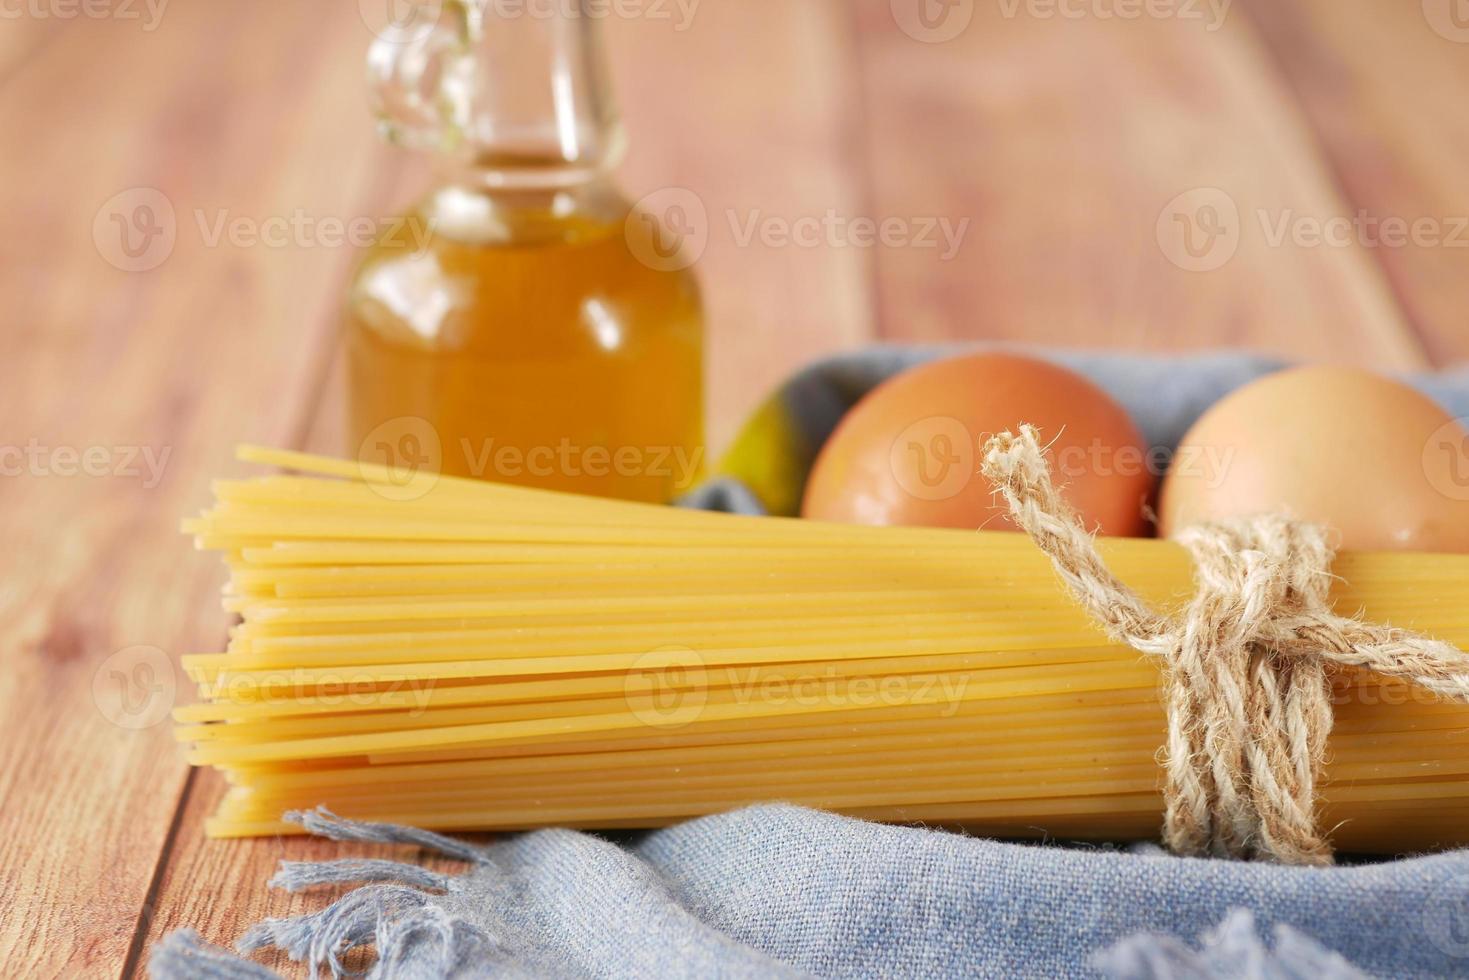 geel lang spaghetti-ei en olie op tafel foto